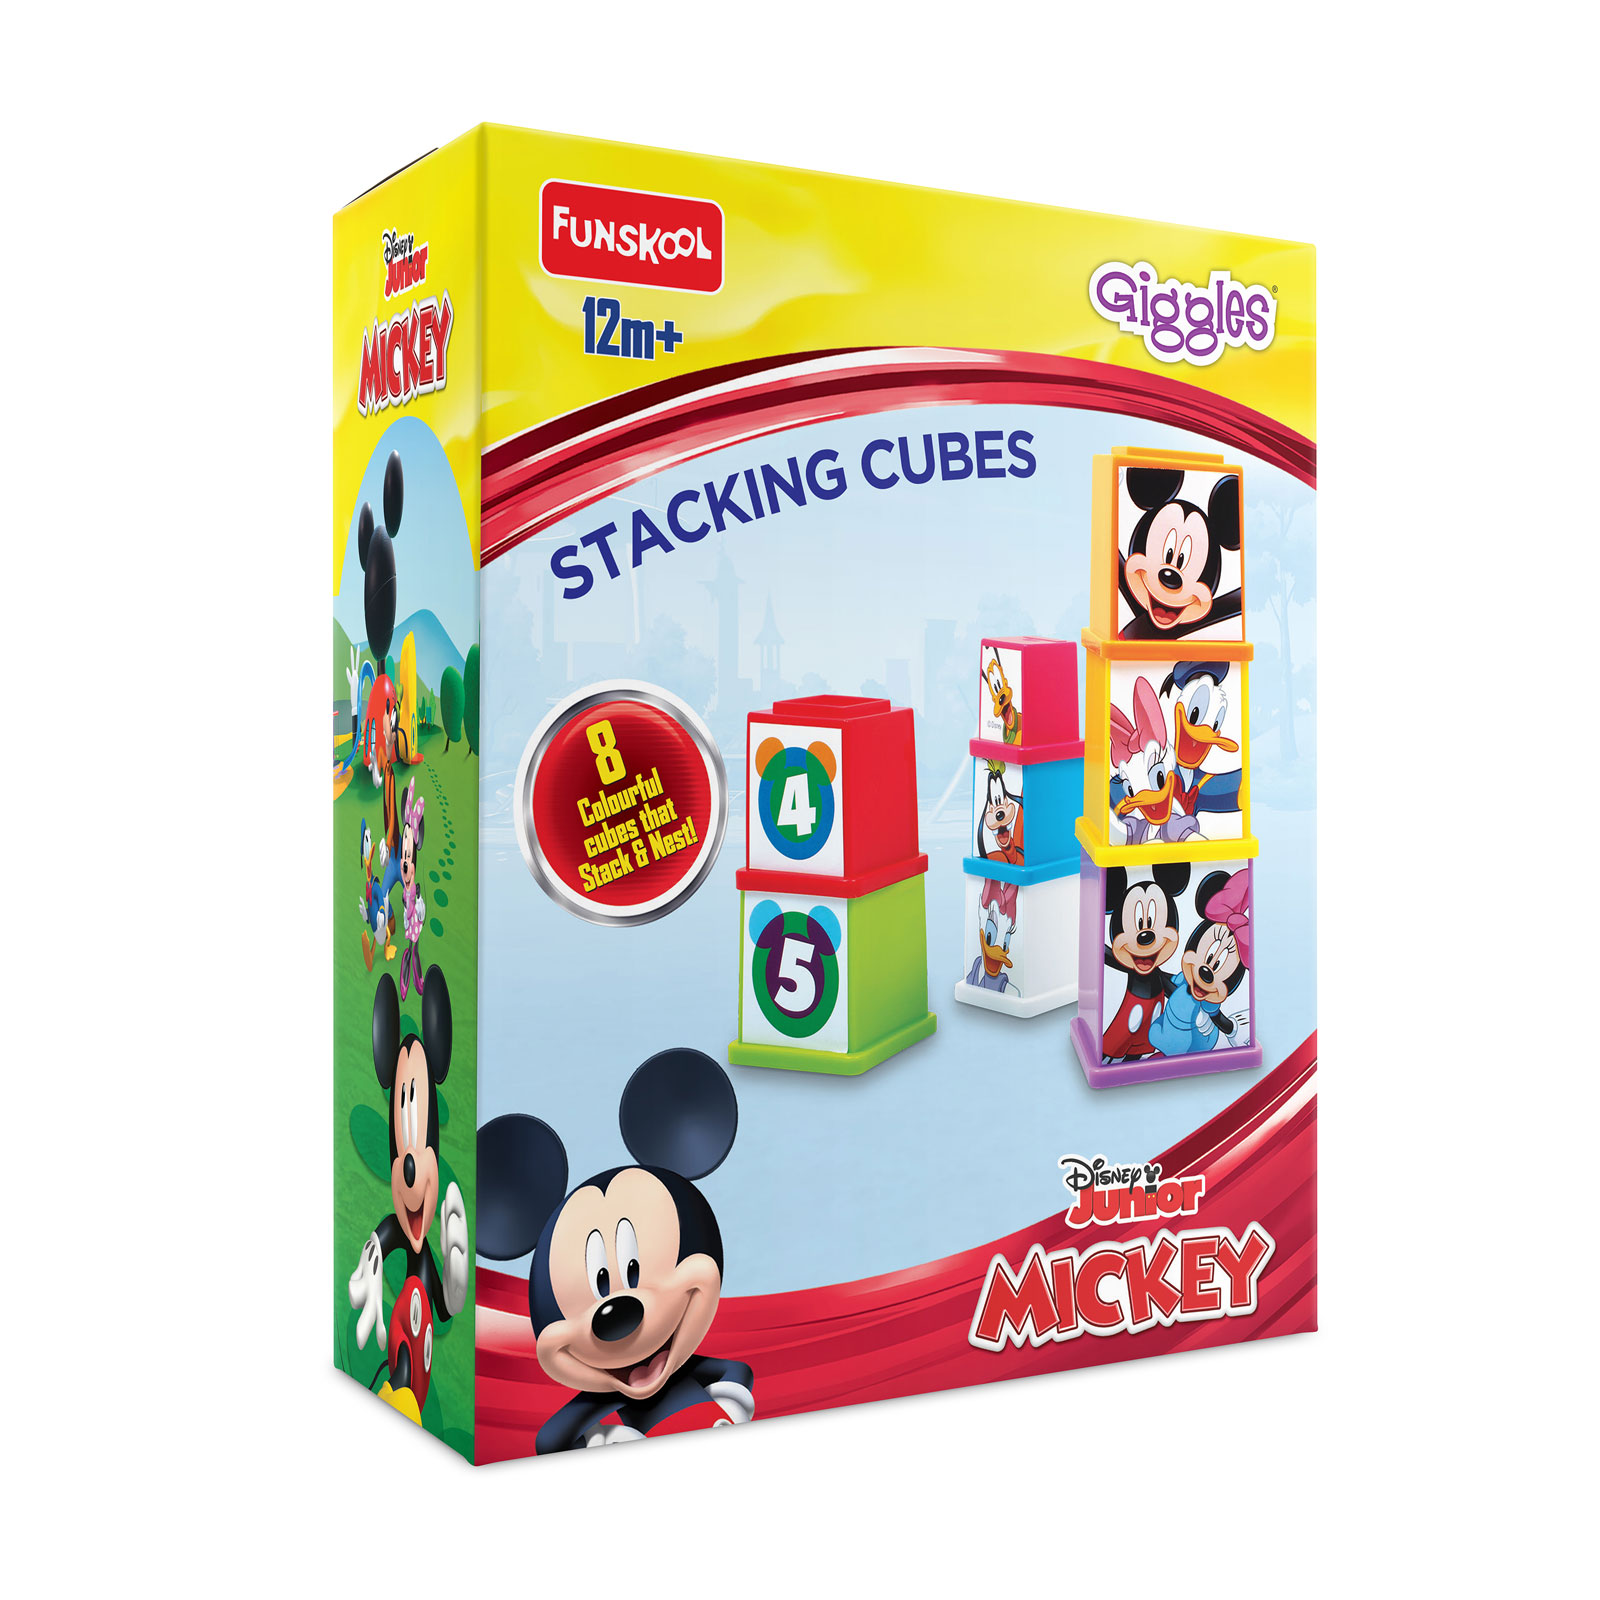 Disney Stacking Cubes